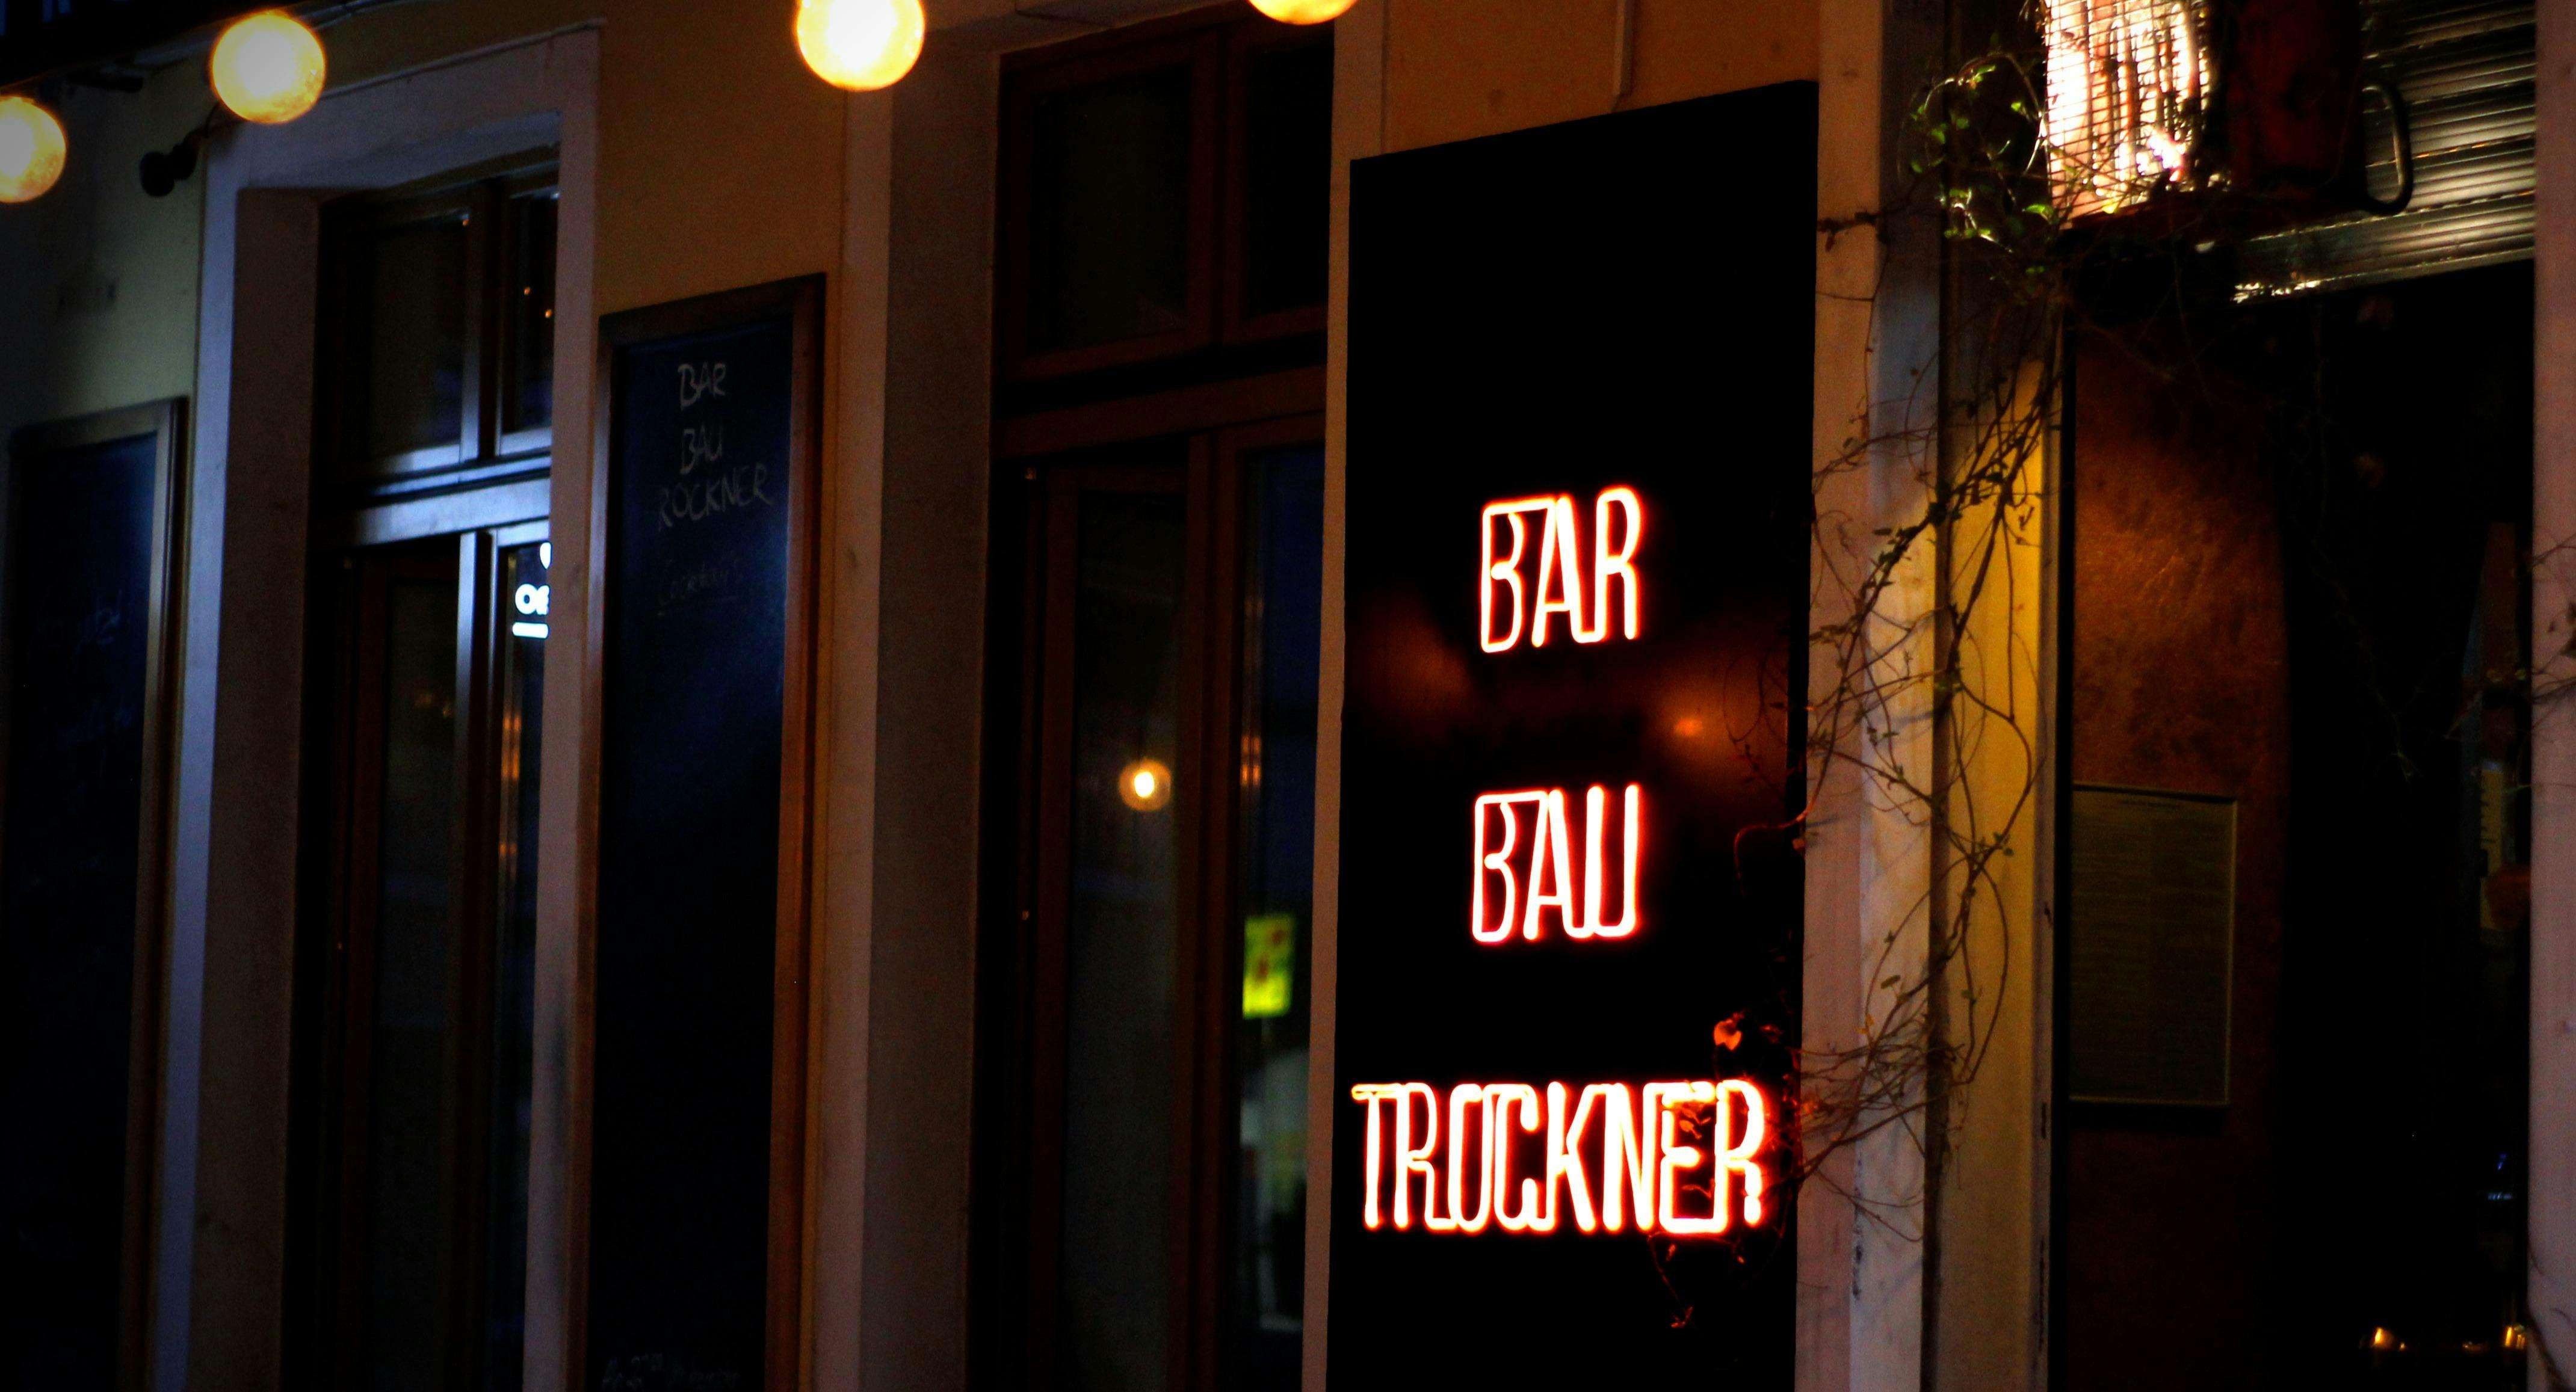 Bilder von Restaurant BAR BAUTROCKNER in Friedrichshain, Berlin